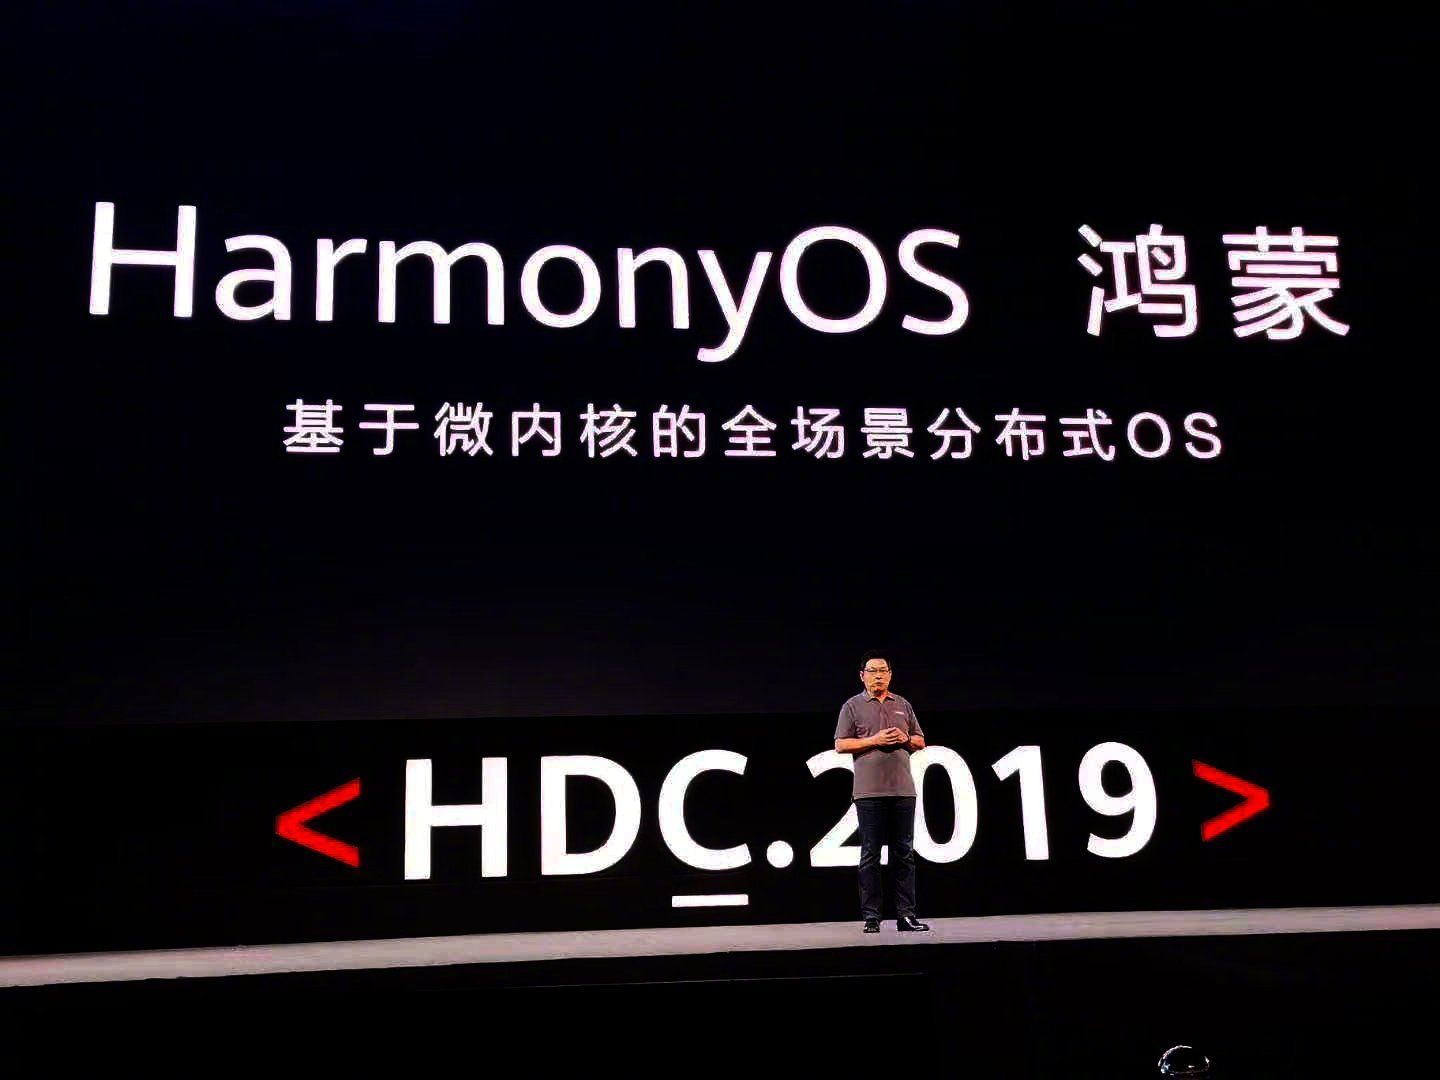 HarmonyOS / Hongmeng OS будет впервые использоваться для этих платформ